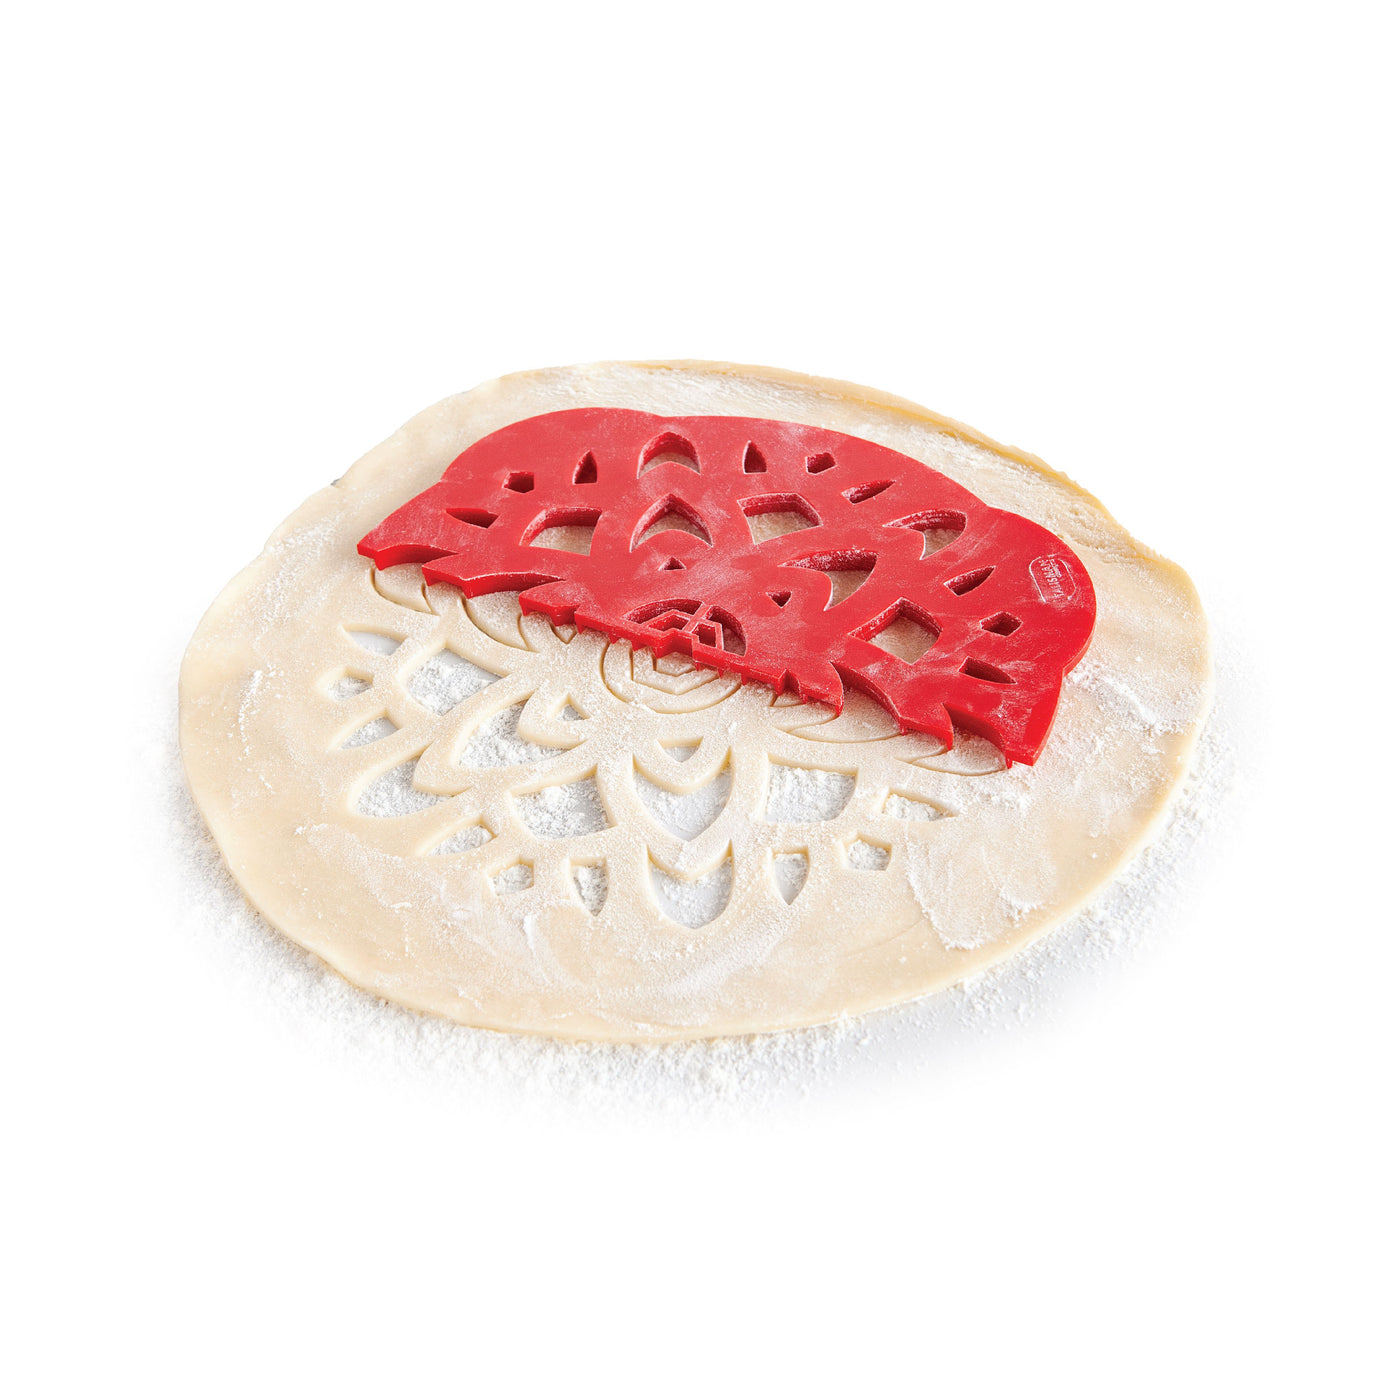 Talisman Designs Pie Crust Cutters | Set of 4